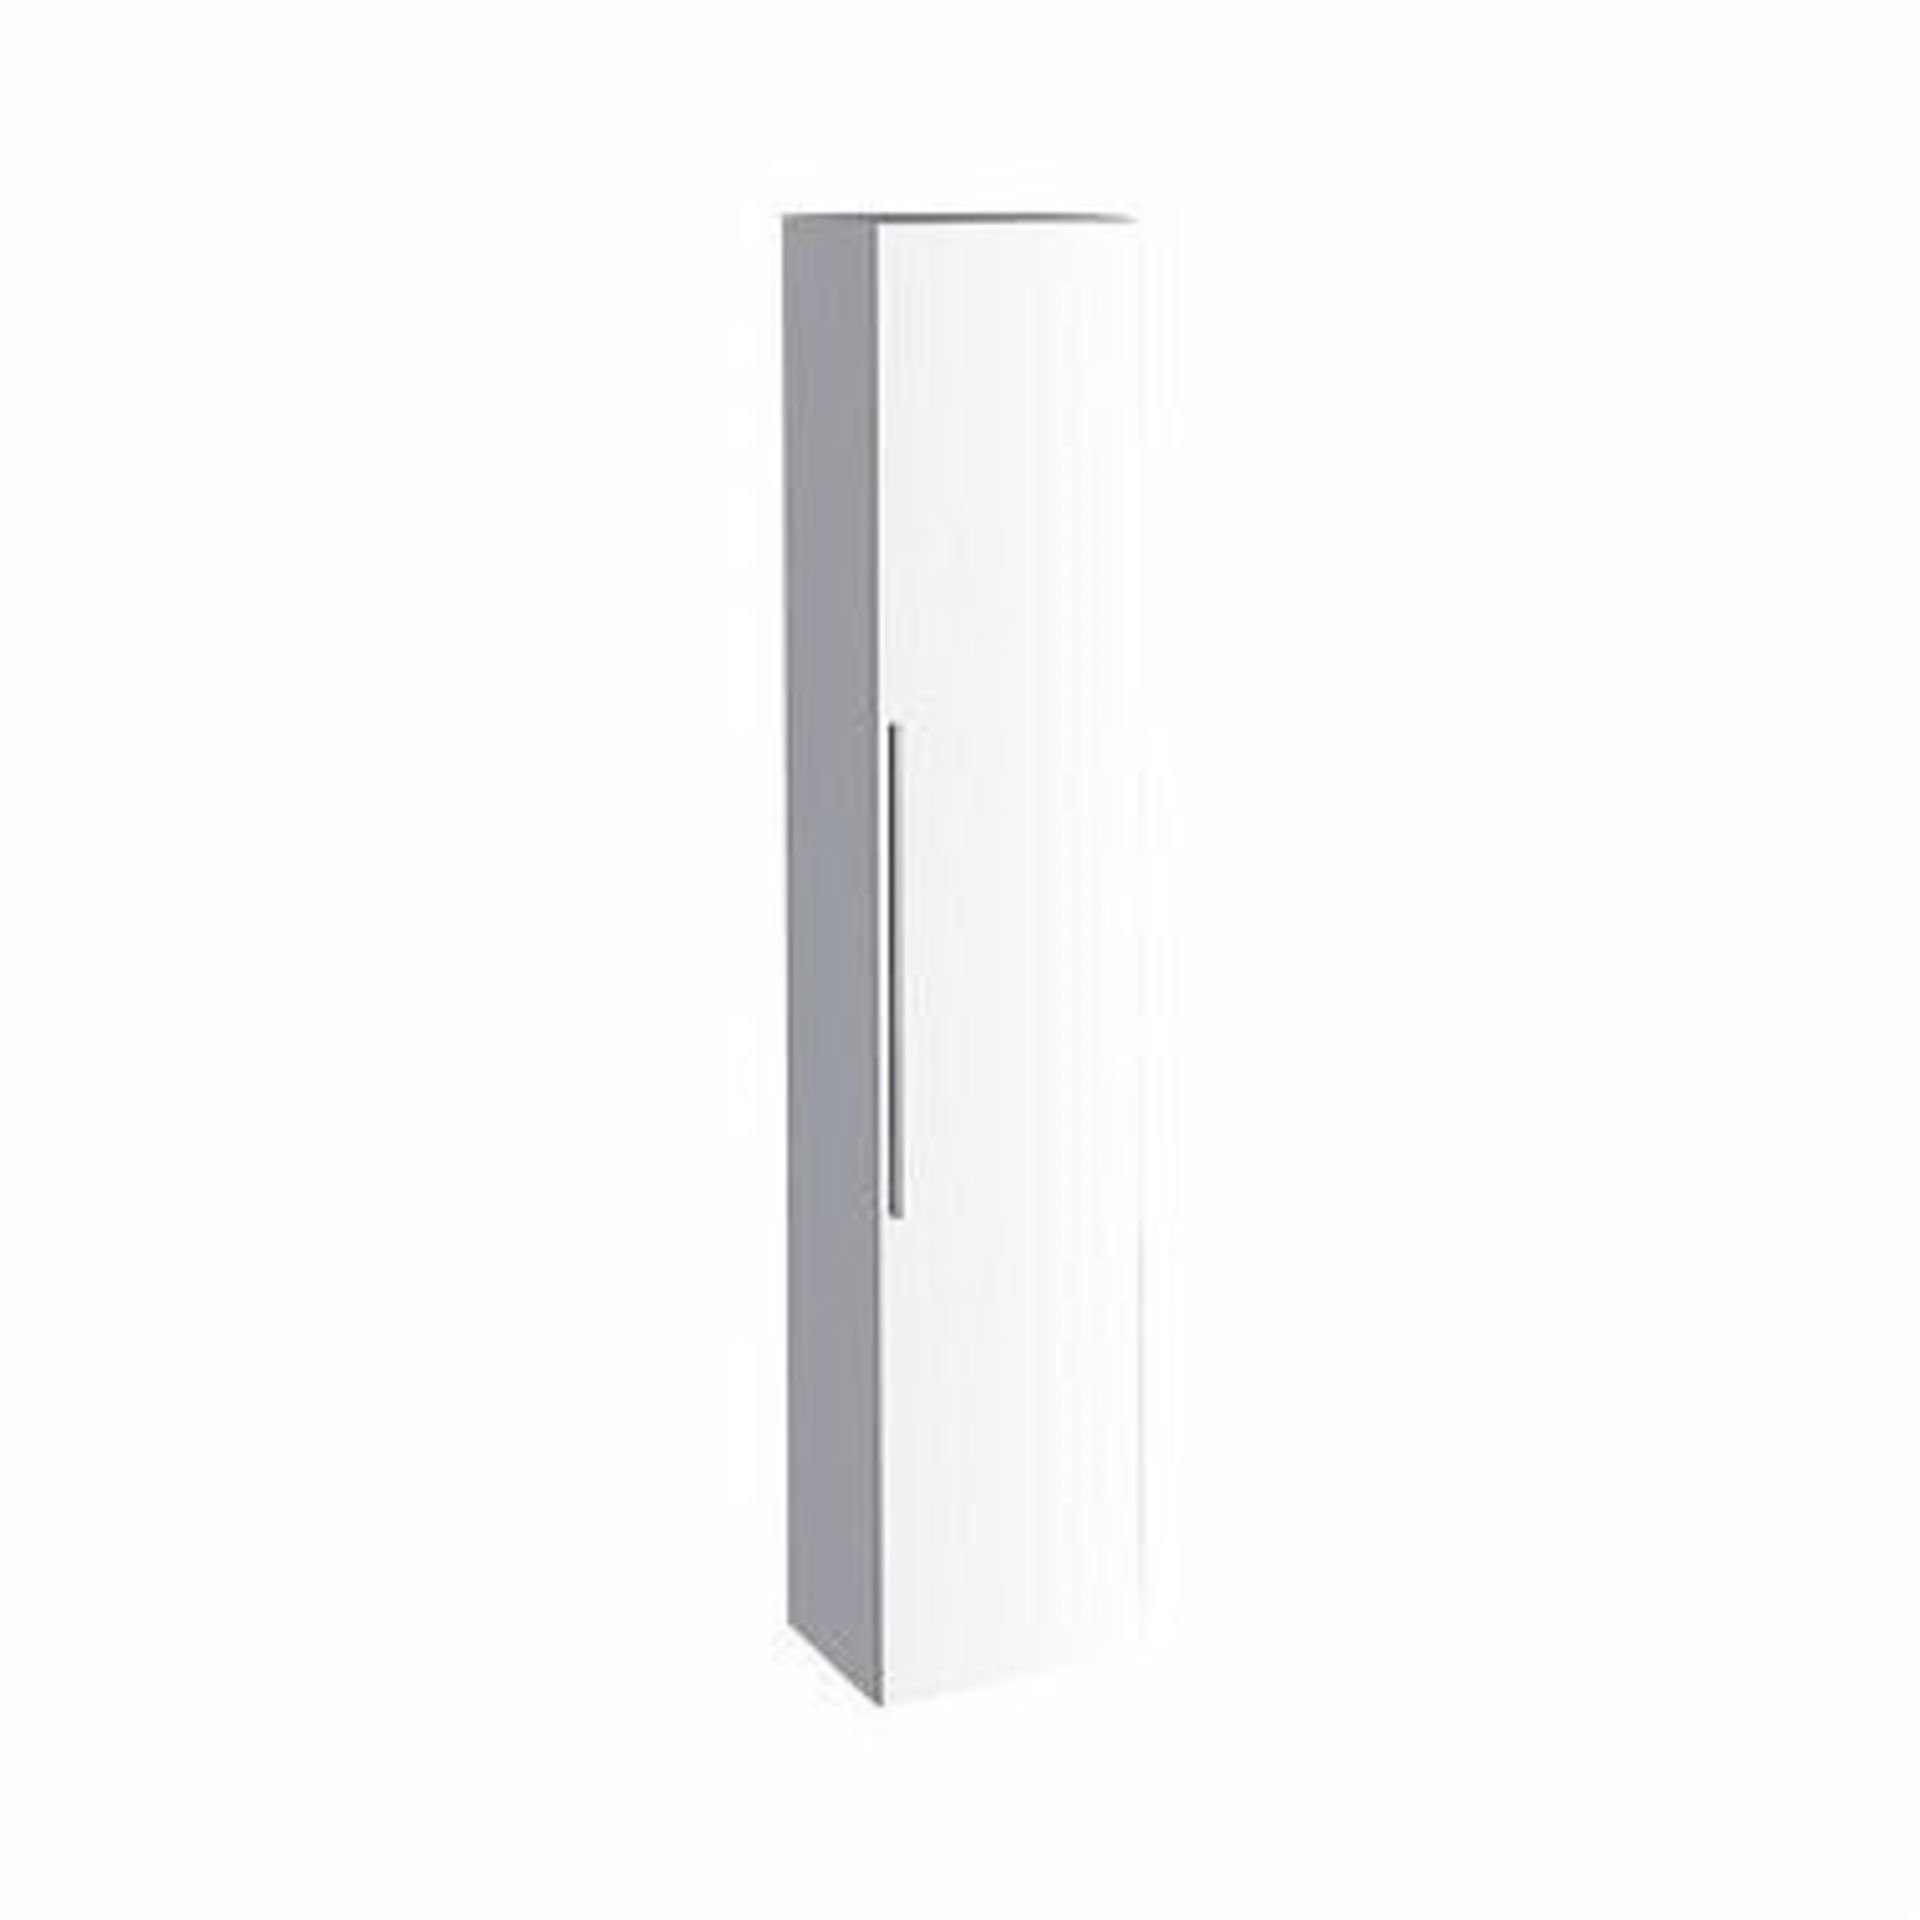 (SA25) Keramag Geberit 1800mm iCon Alpine High Gloss Wall Hung Storage Cabinet RRP £879.99.Thi... - Image 3 of 3